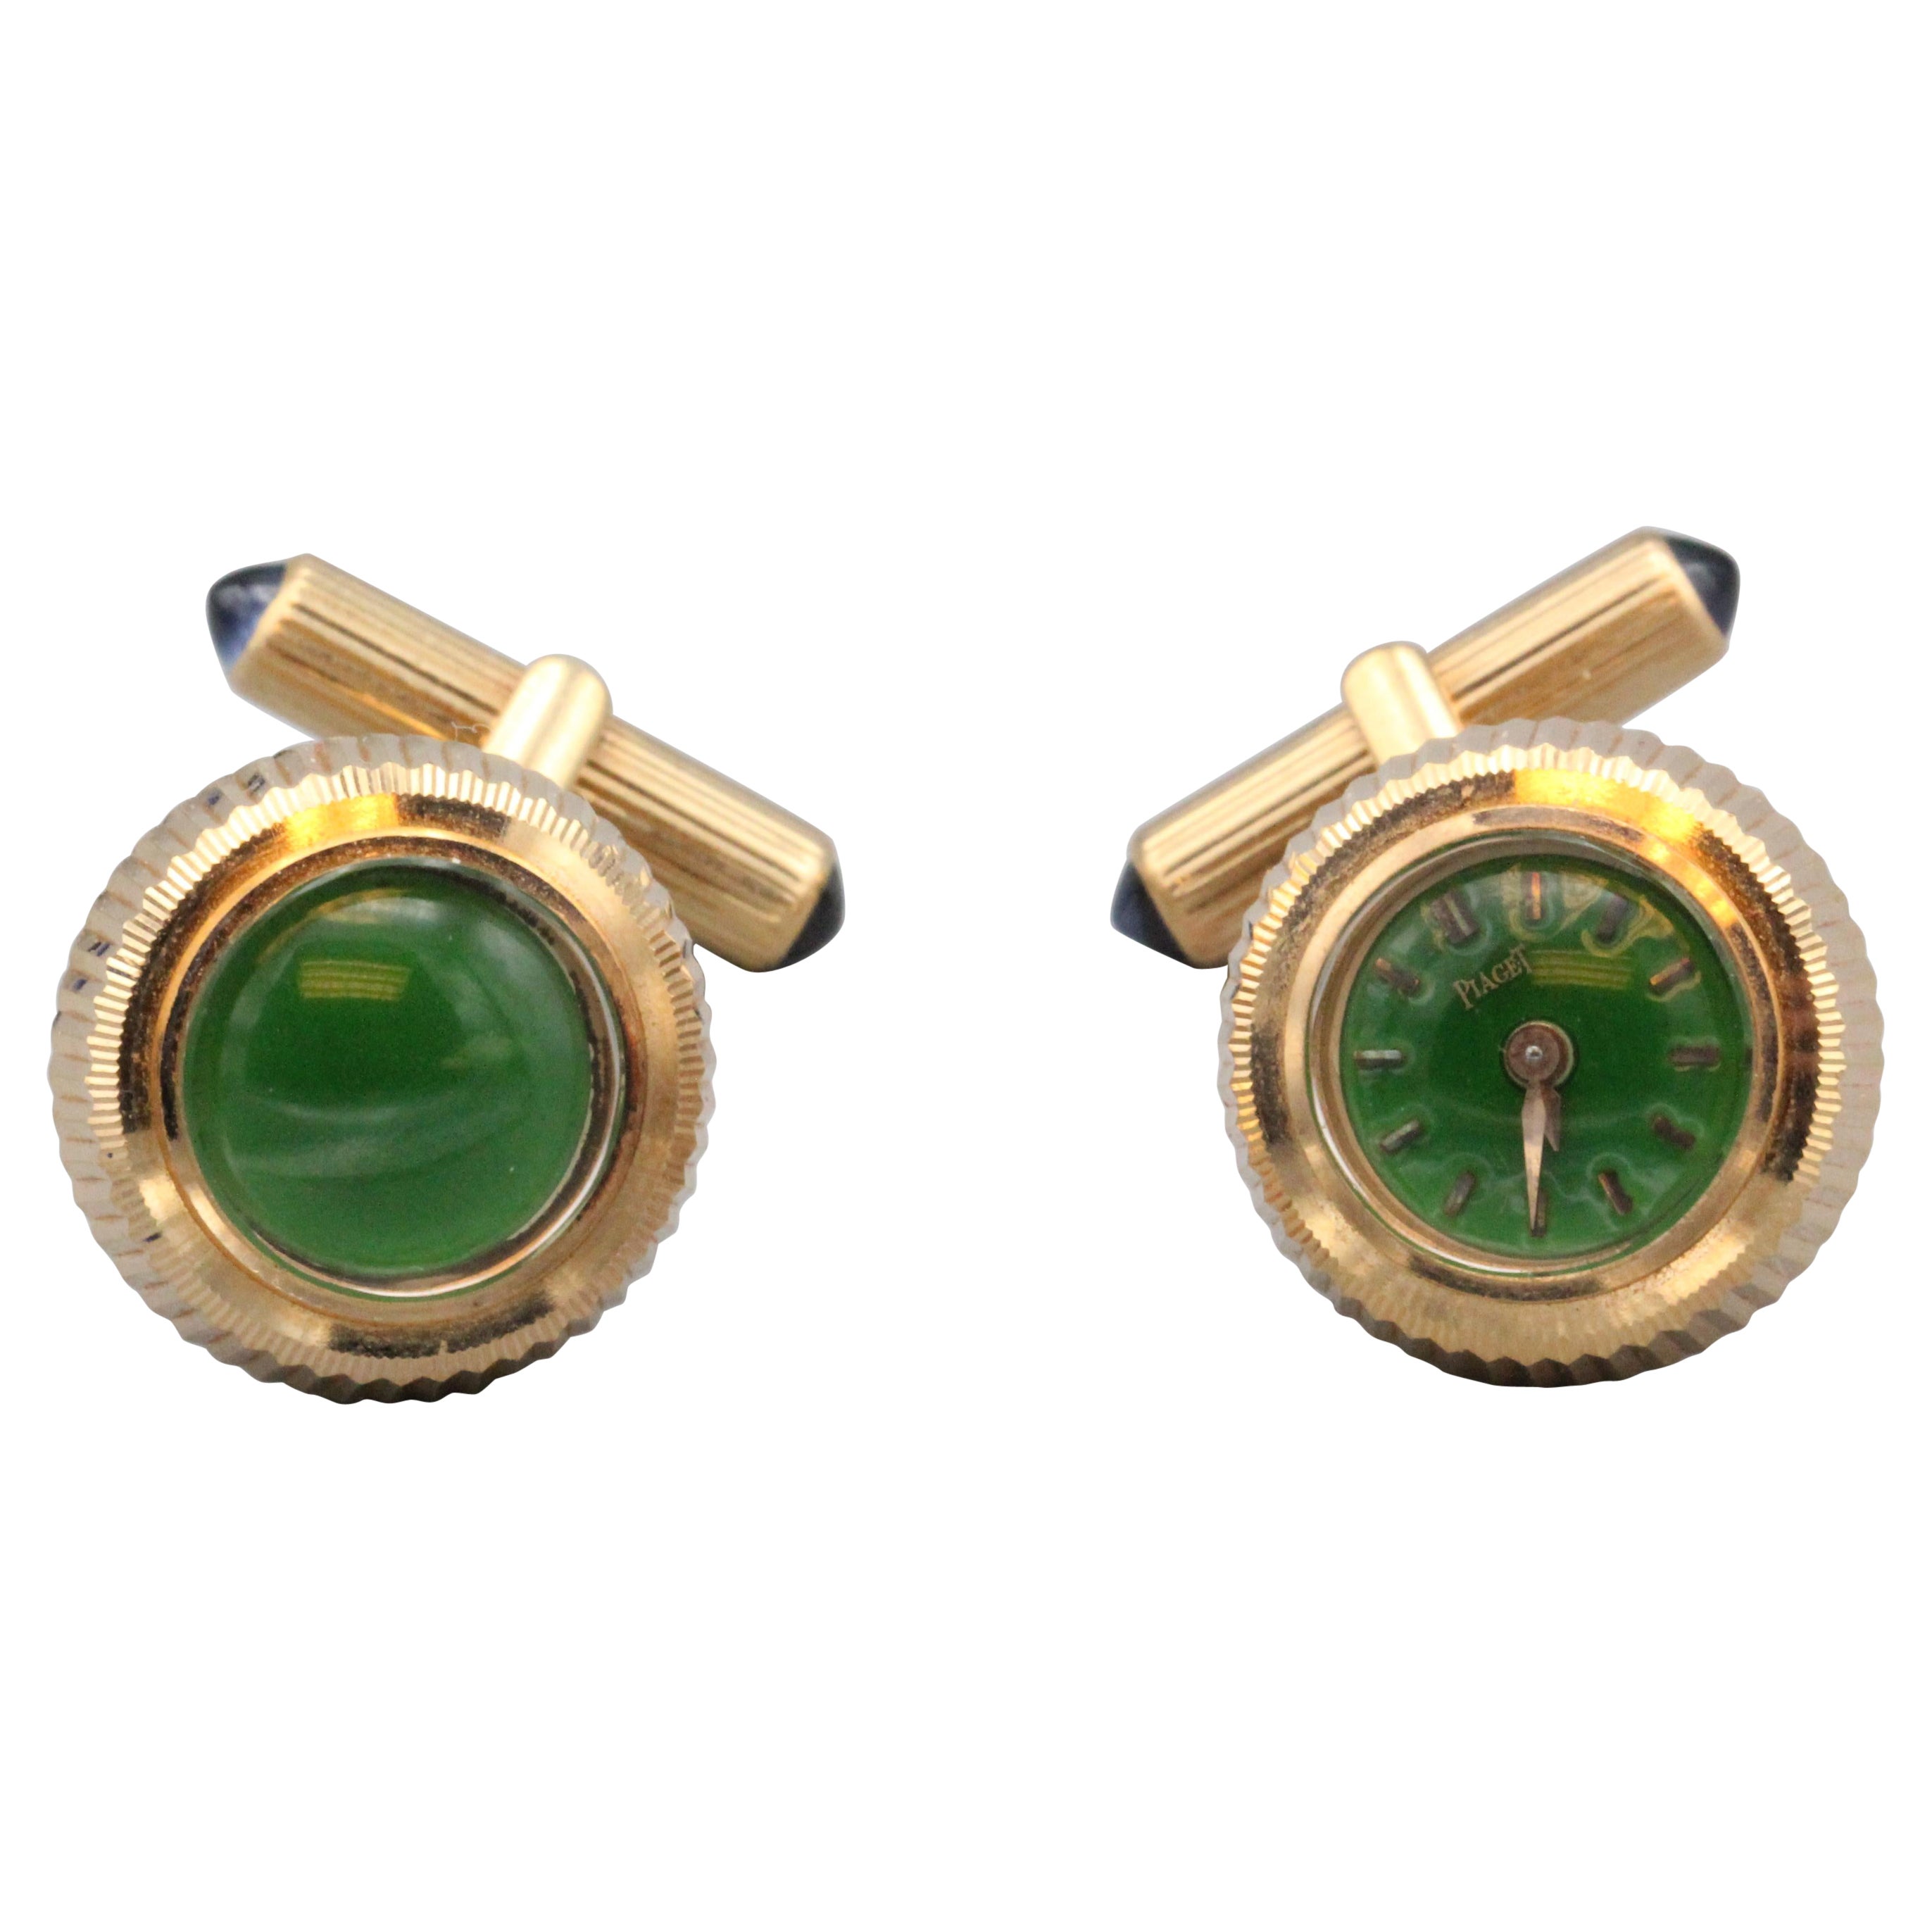 Piaget 18 Karat Gold Uhren-Manschettenknöpfe mit grüner Emaille und Saphir